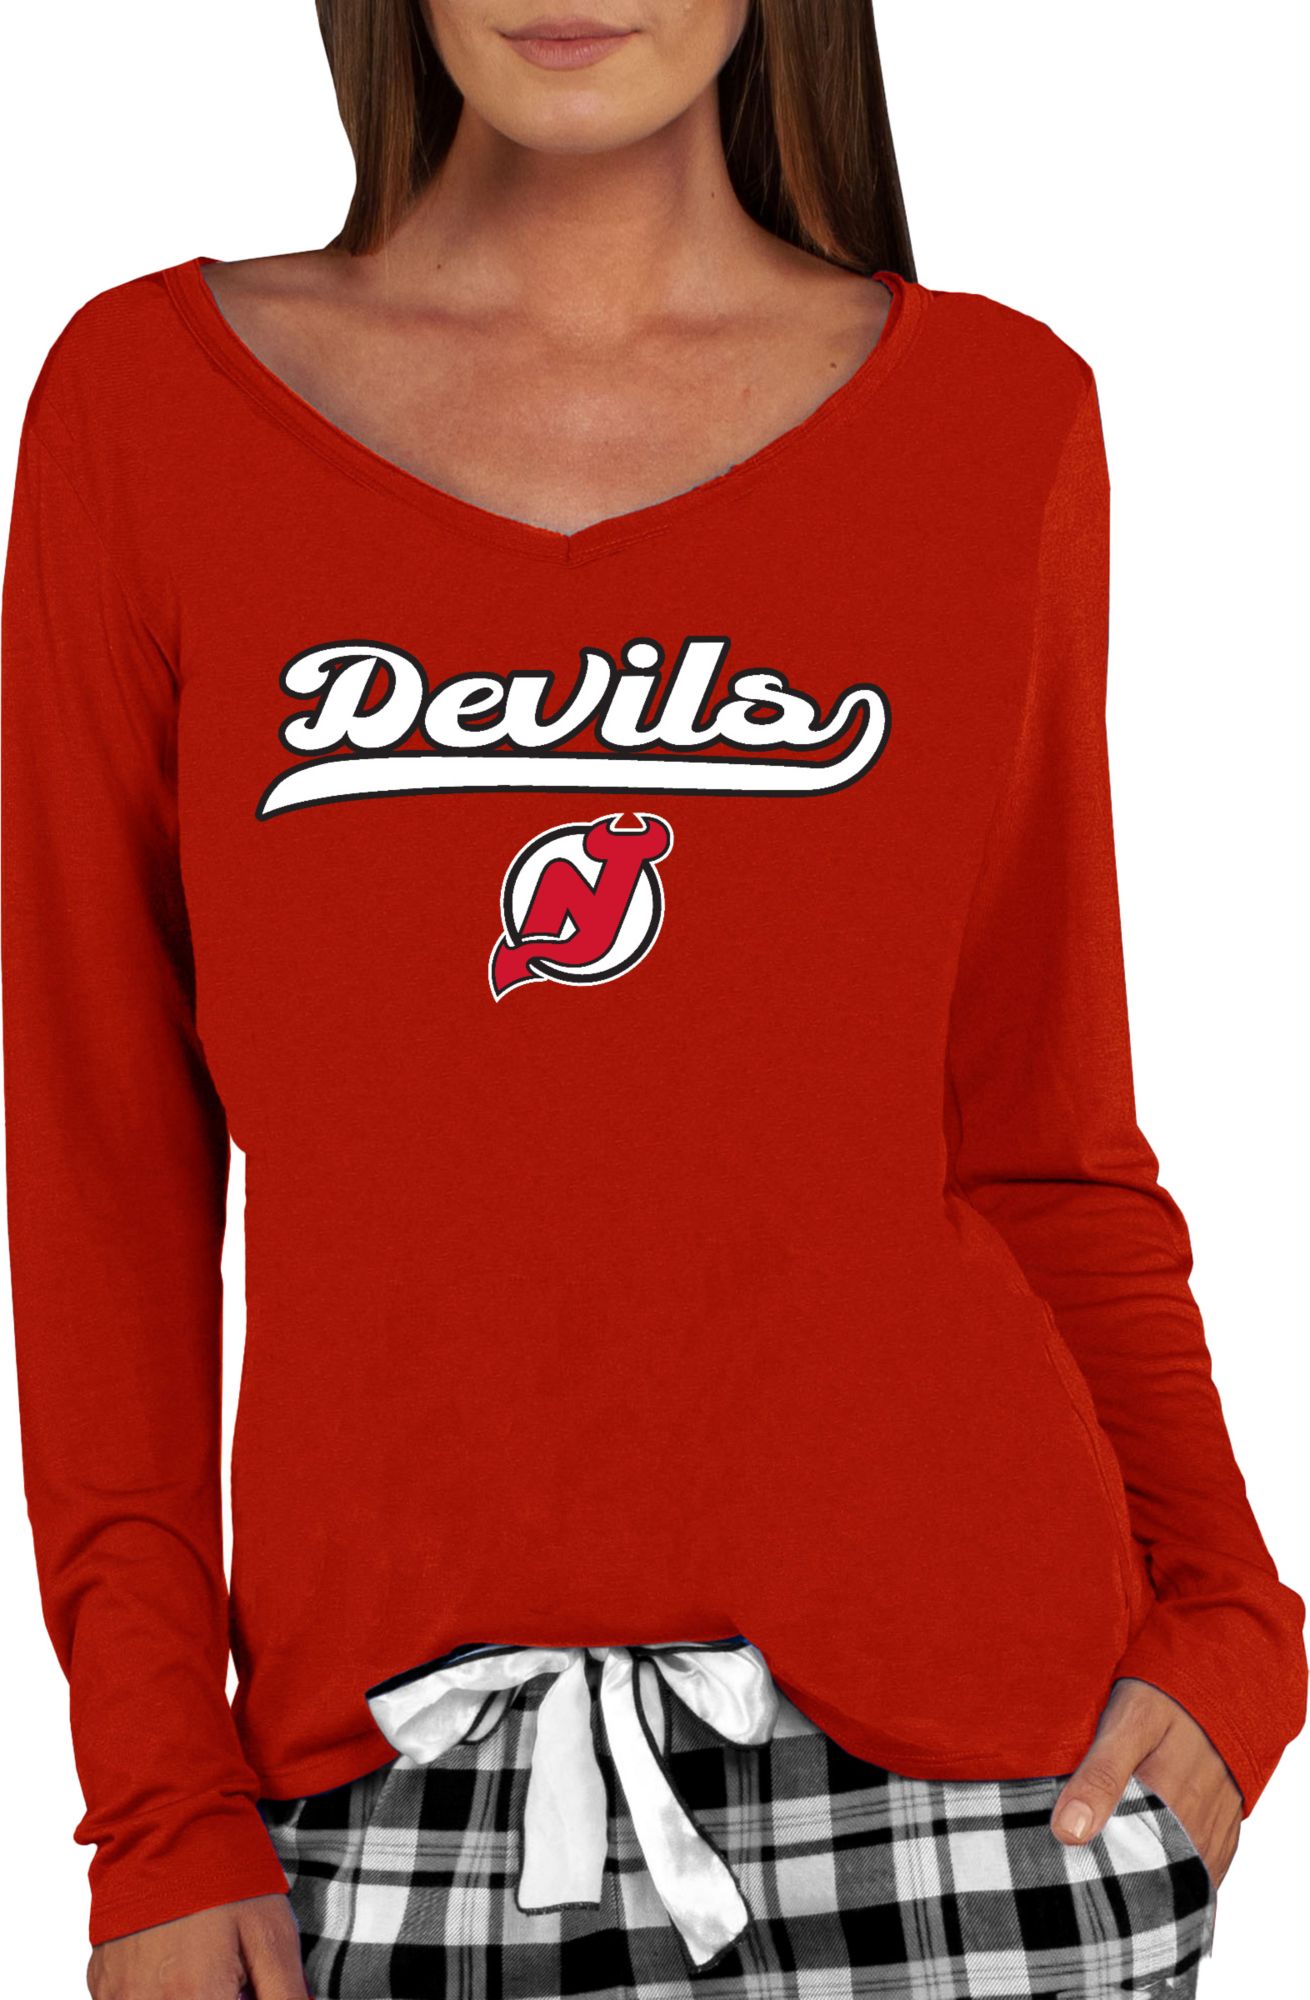 new jersey devils women's apparel